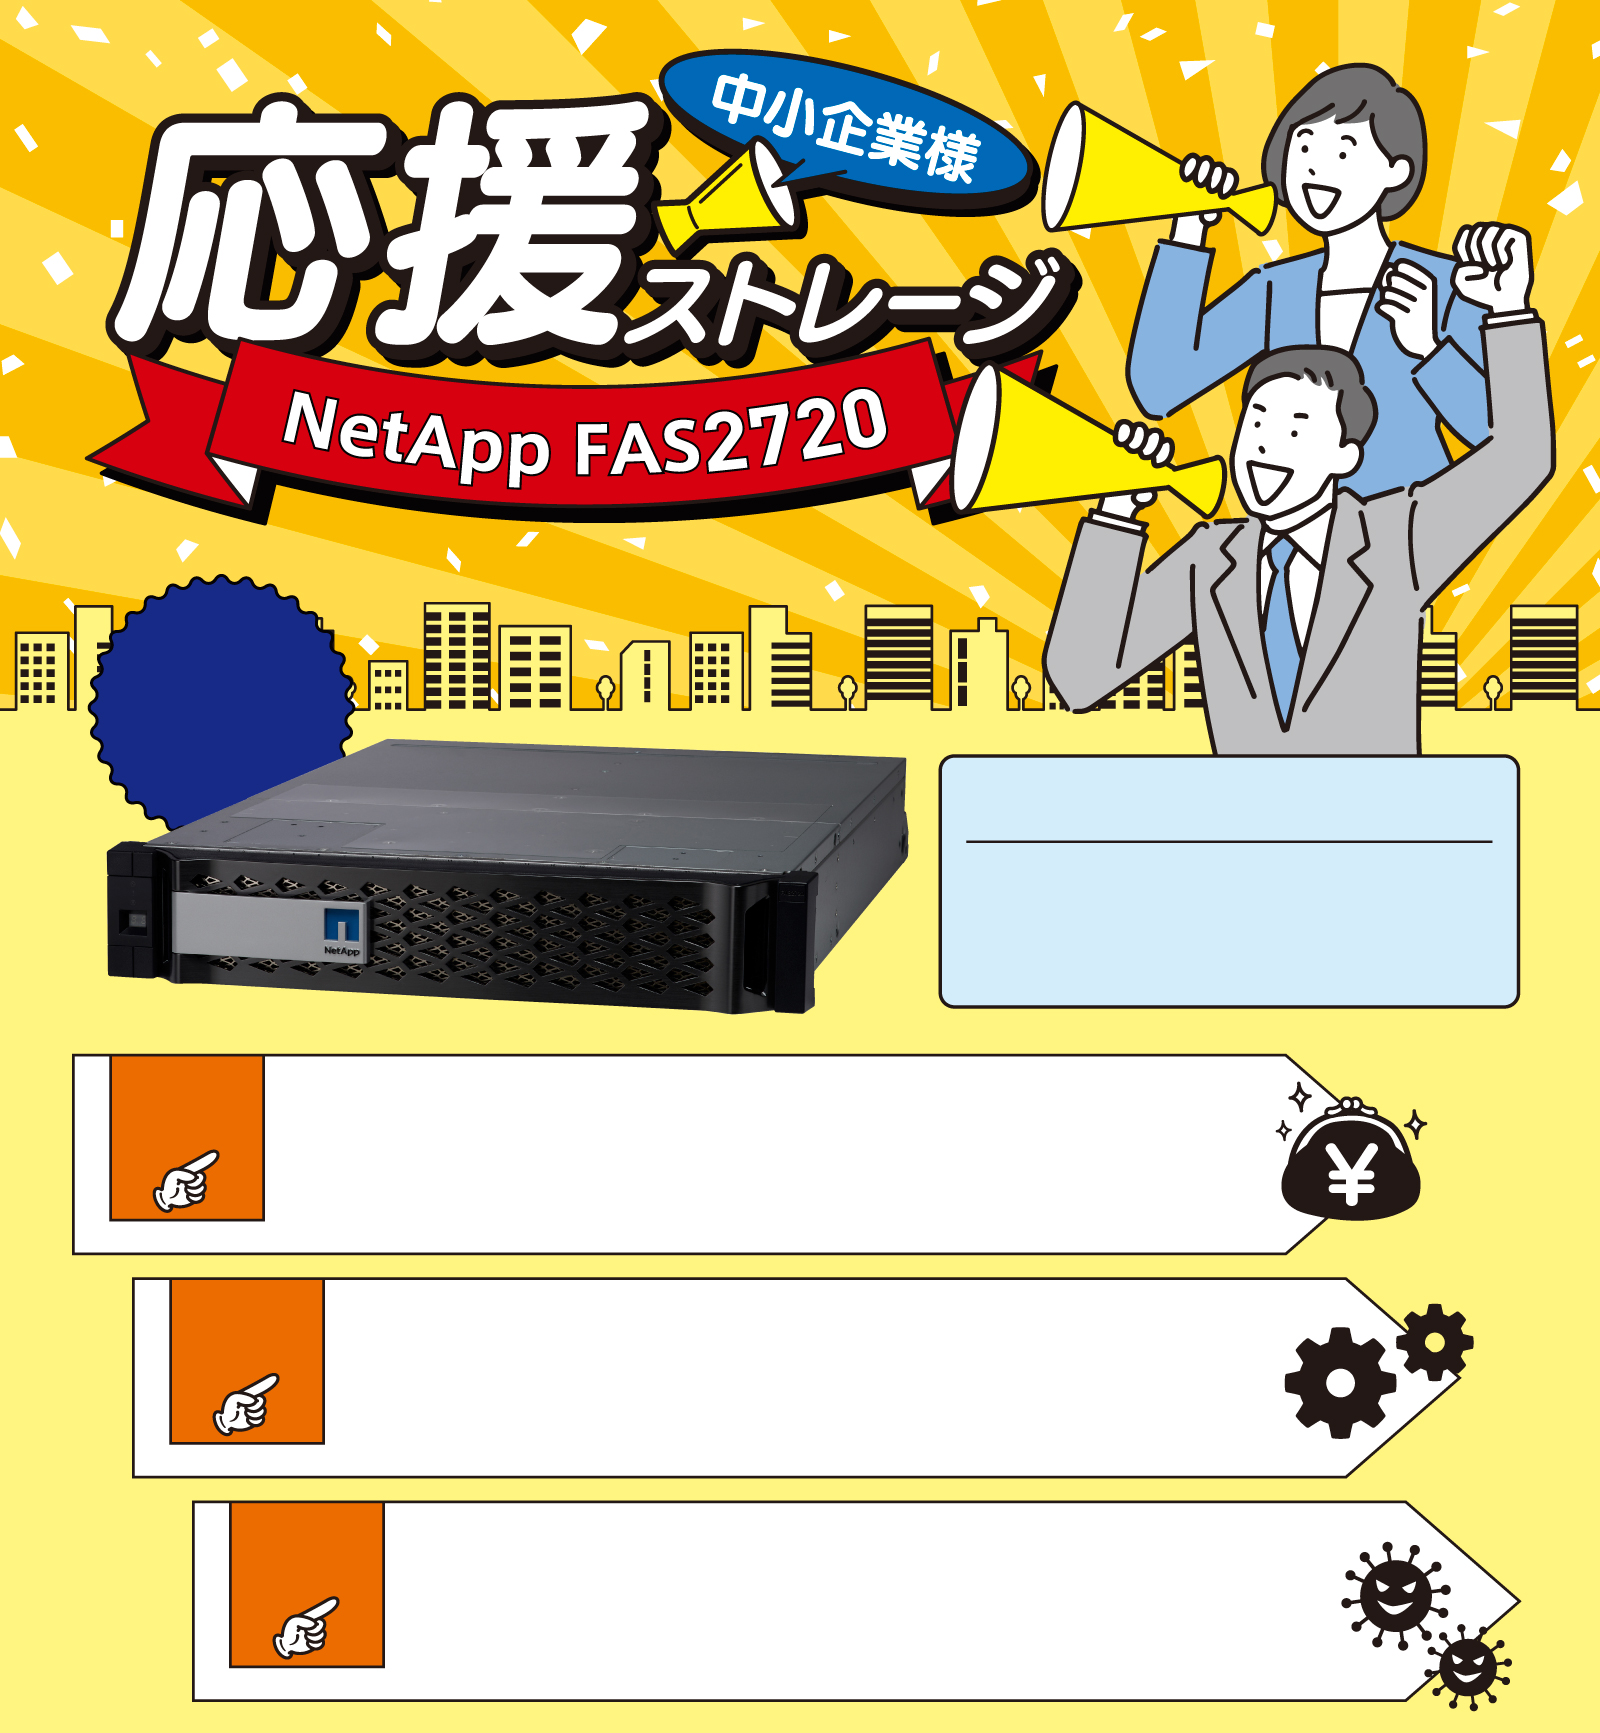 中小企業様応援ストレージ NetApp FAS2720